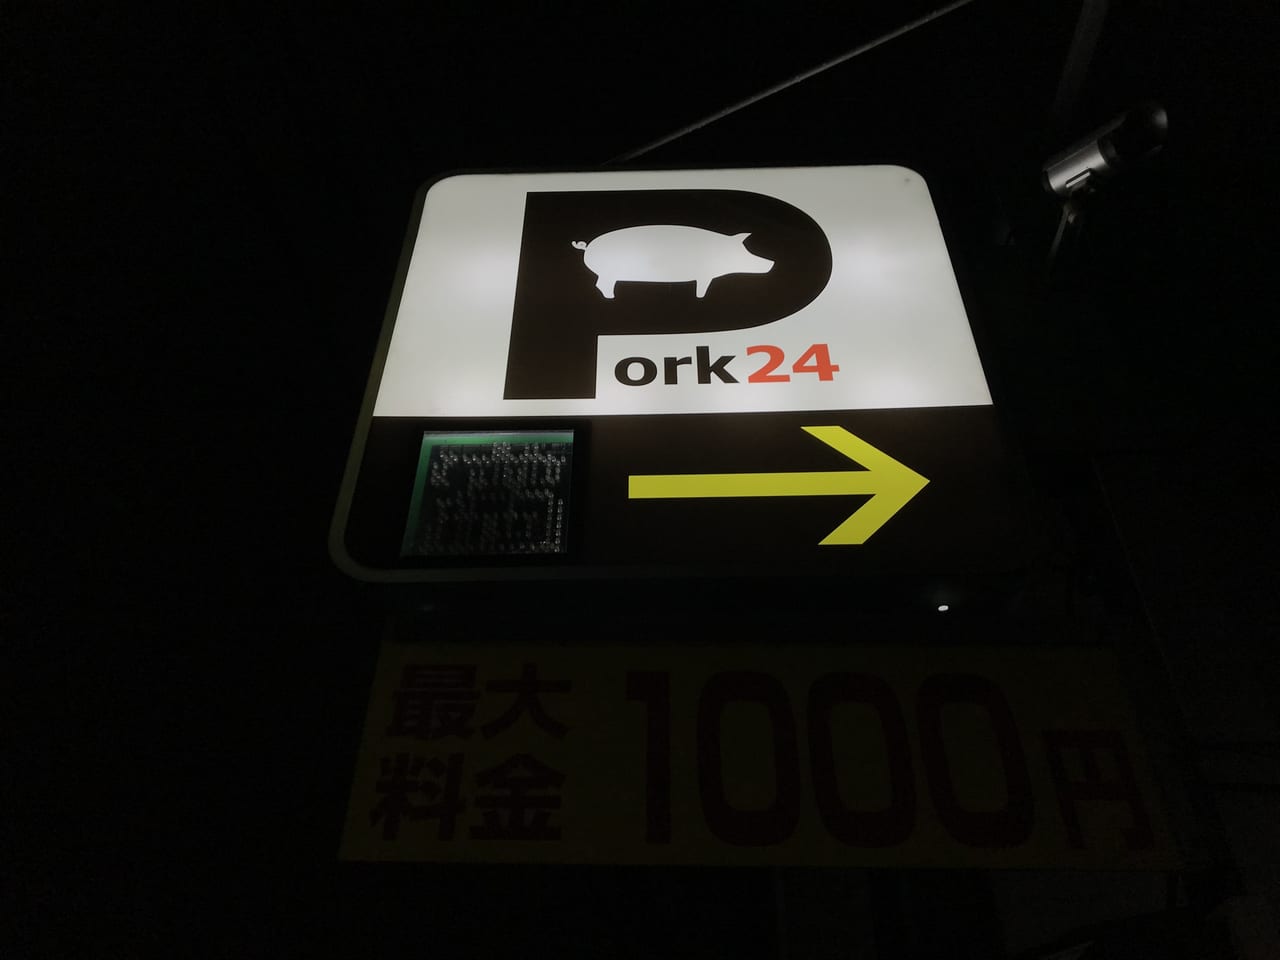 世田谷区中町のおもしろネーミングのパーキング「Pork24」